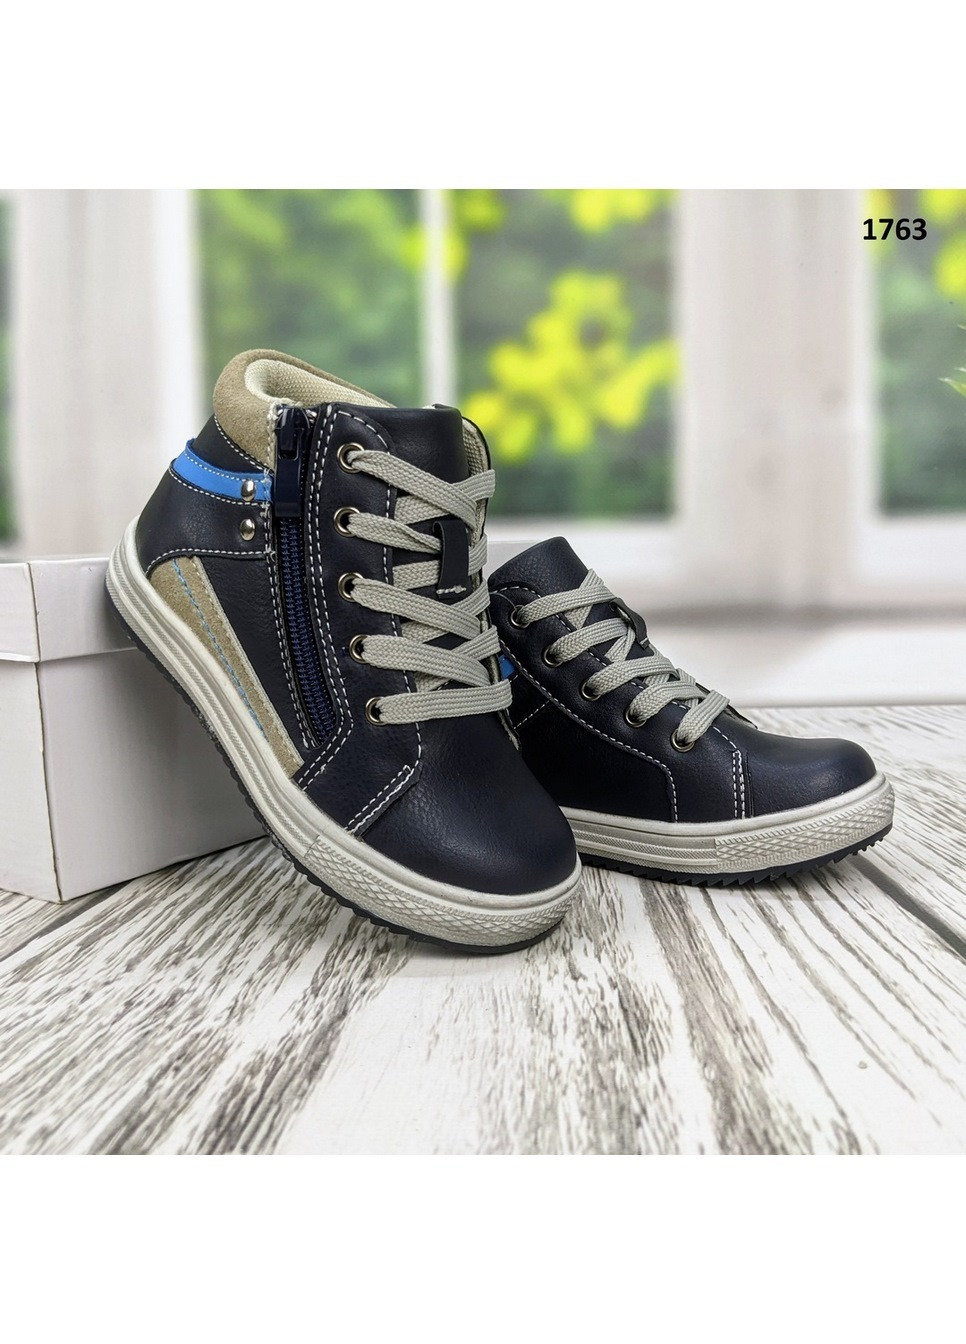 Синие повседневные осенние ботинки детские демисезонные для мальчика С.Луч